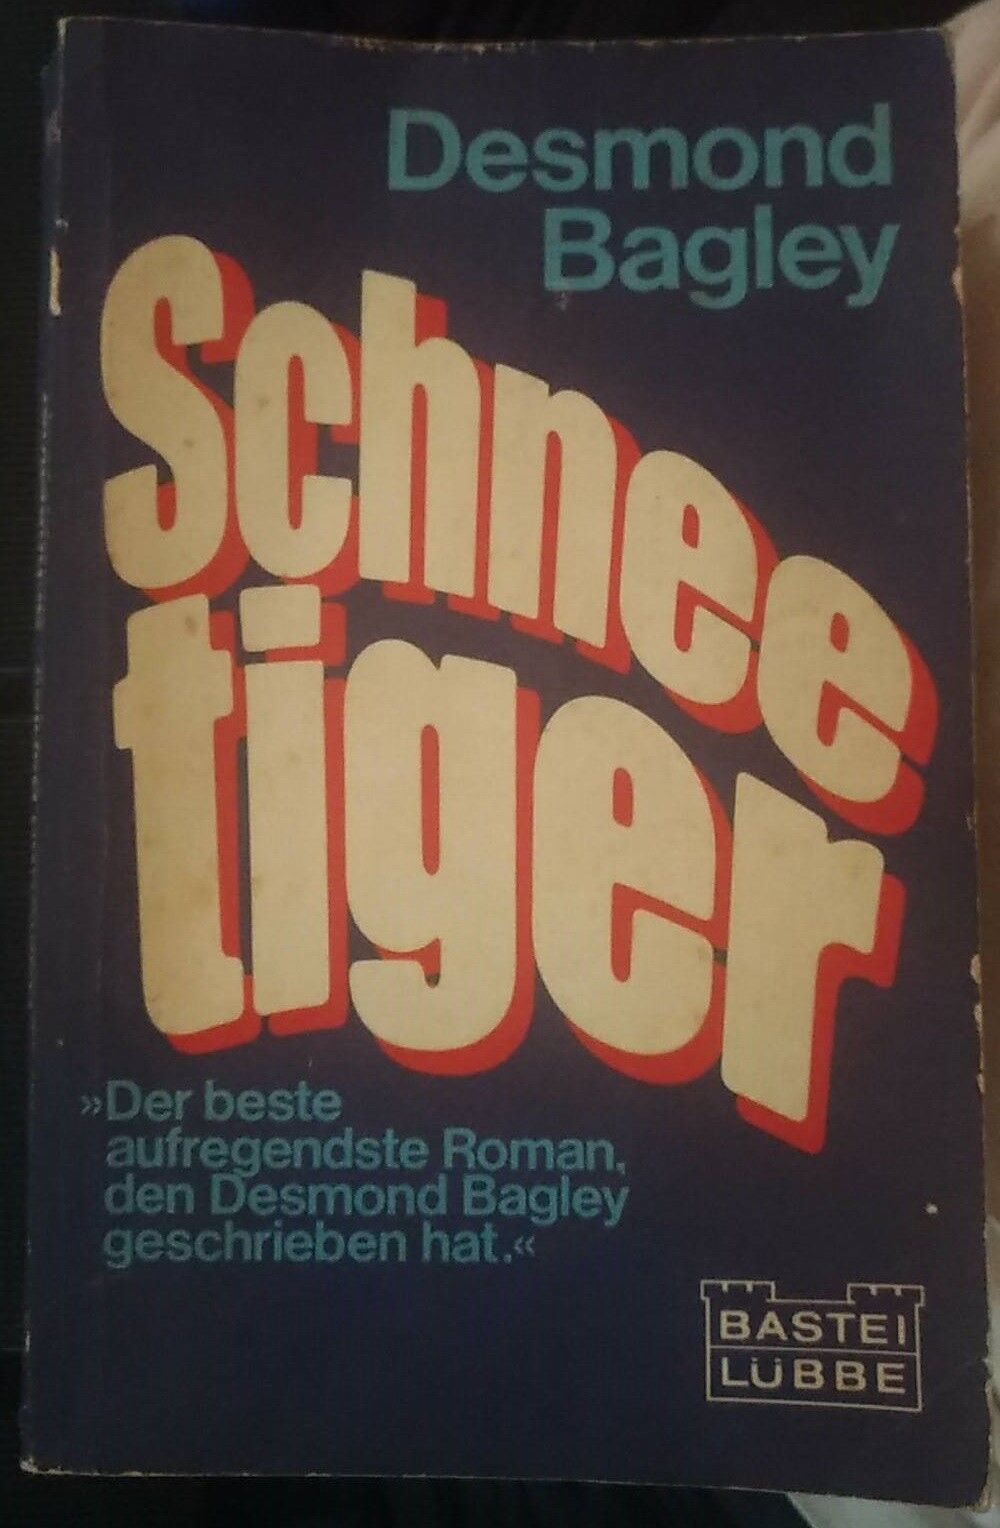 Schnee tiger - Desmond Bagley,  1979,  Bastei L?bbe - S